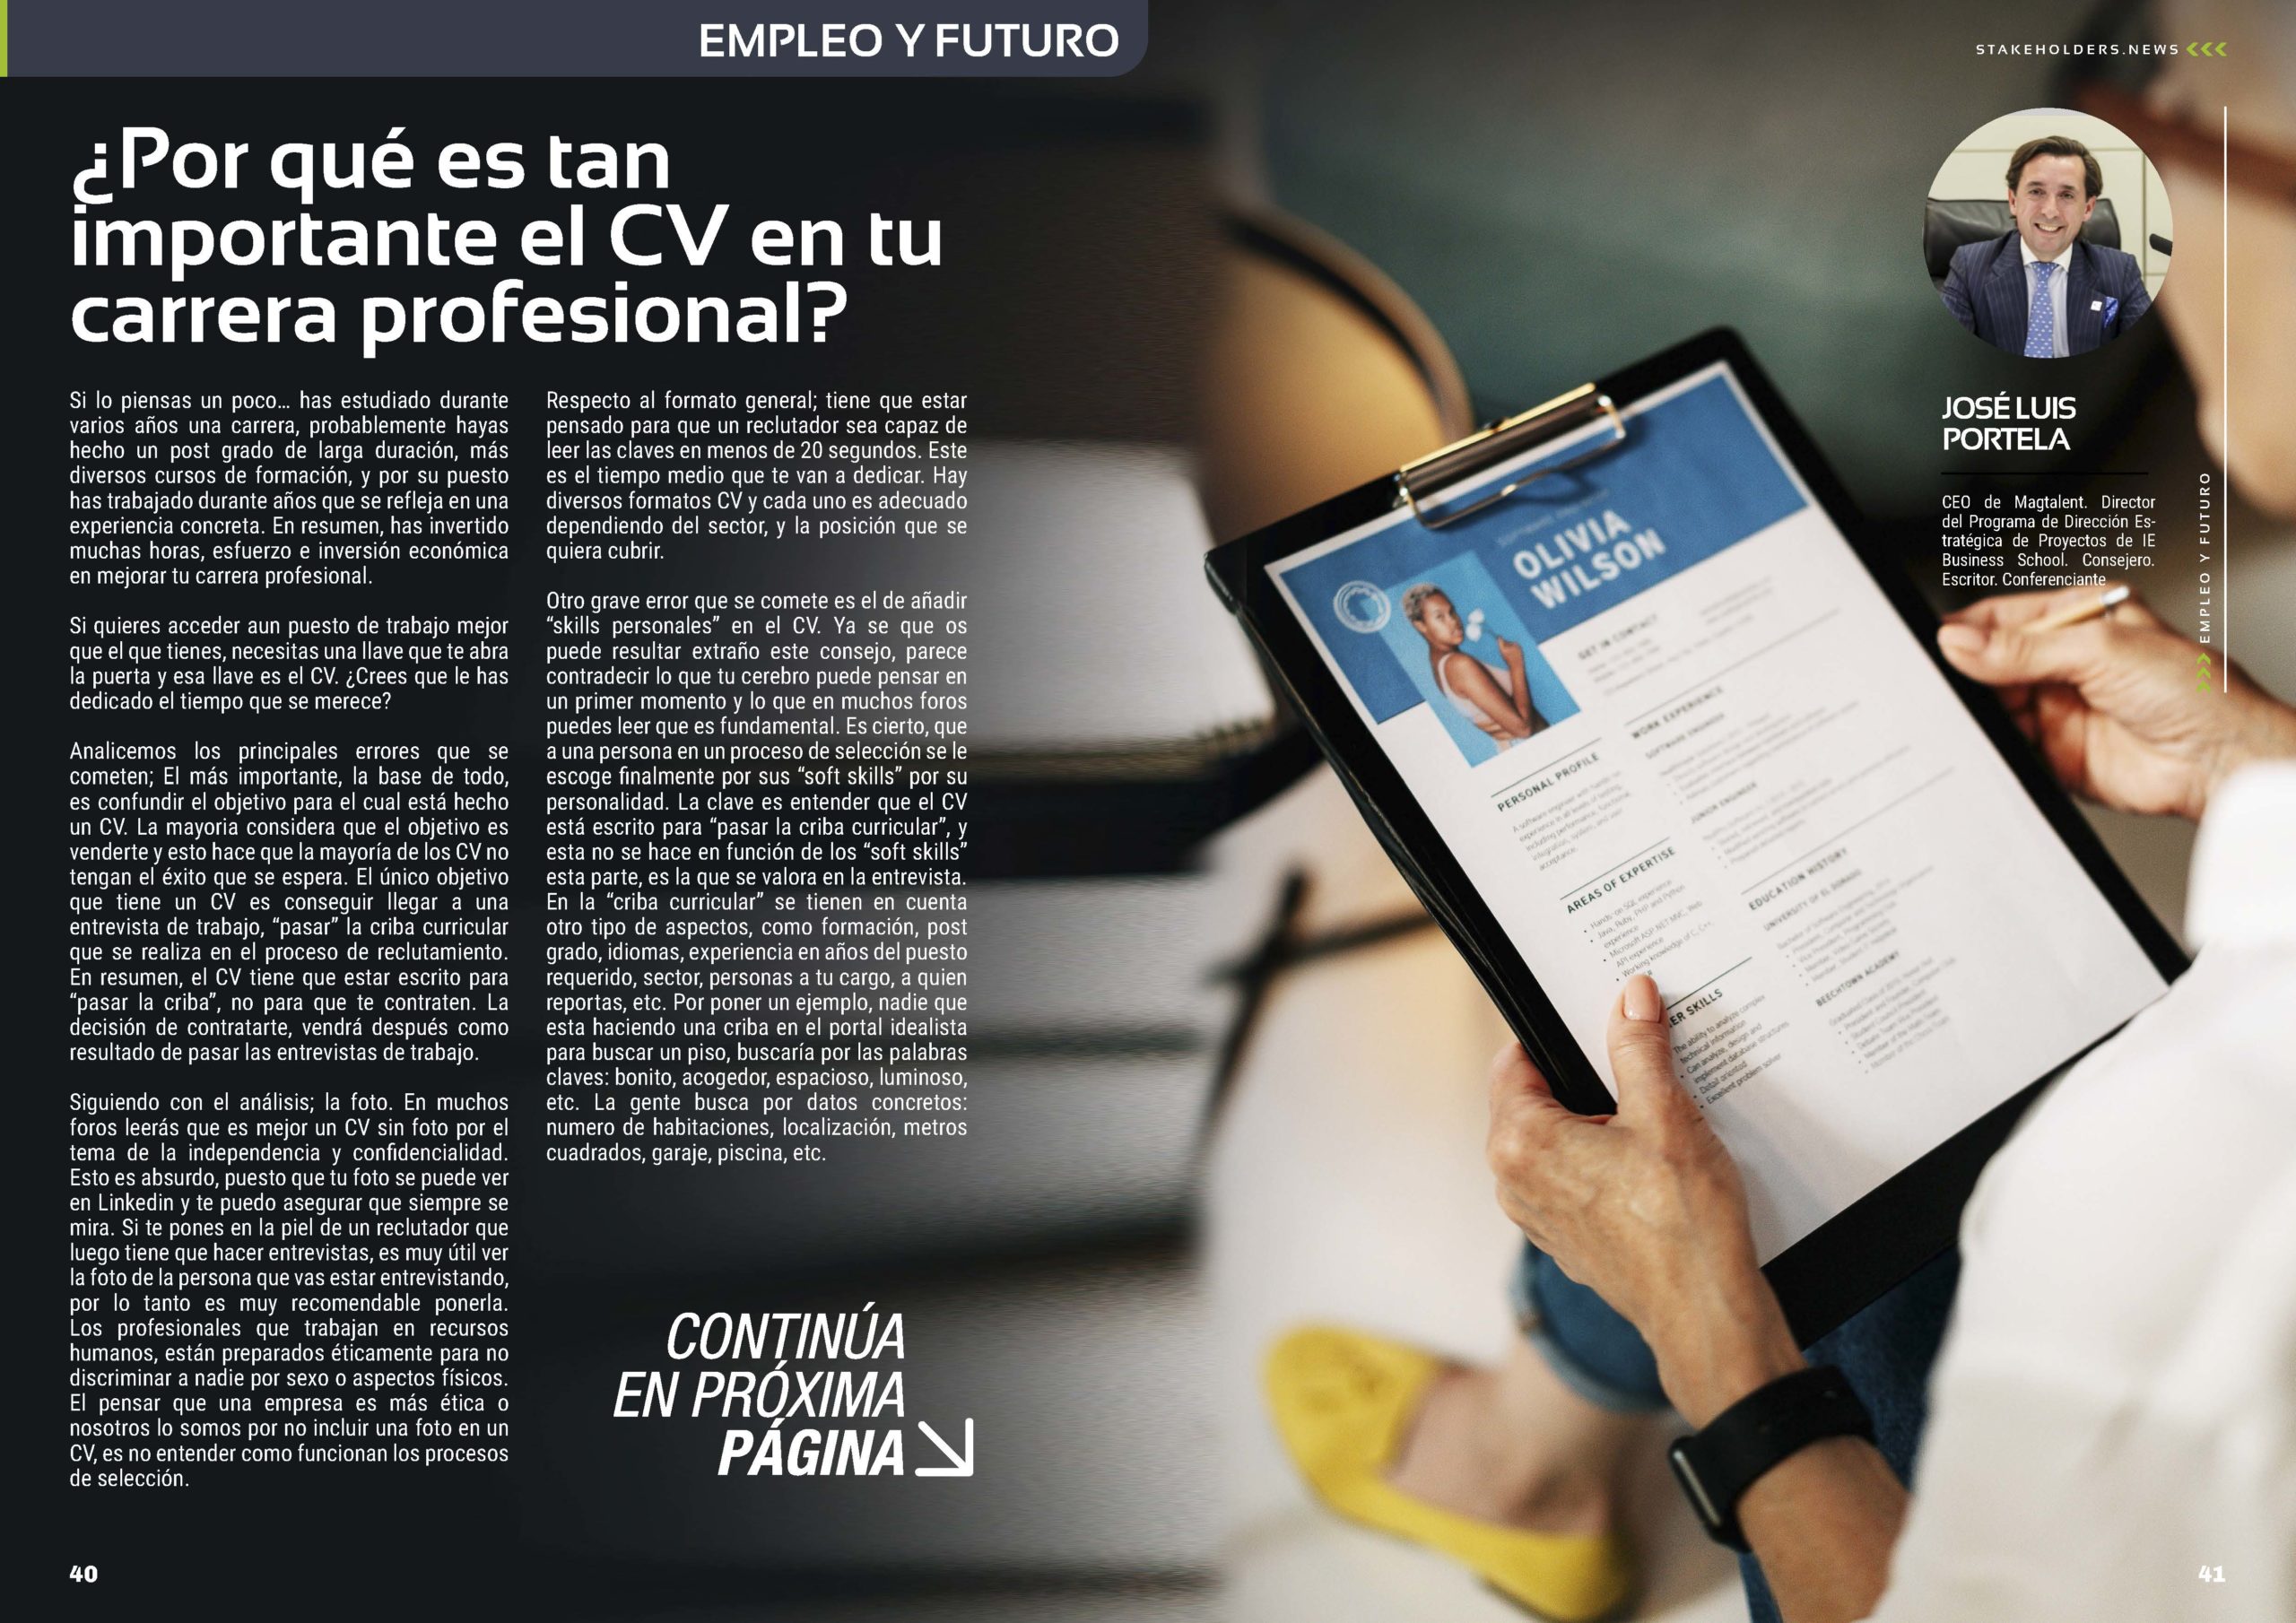 Articulo "¿Por qué es tan importante el cv en tu carrera profesional?" de Jose Luis Portela en la Sección "Empleo y Futuro" de la Revista Stakeholders.news